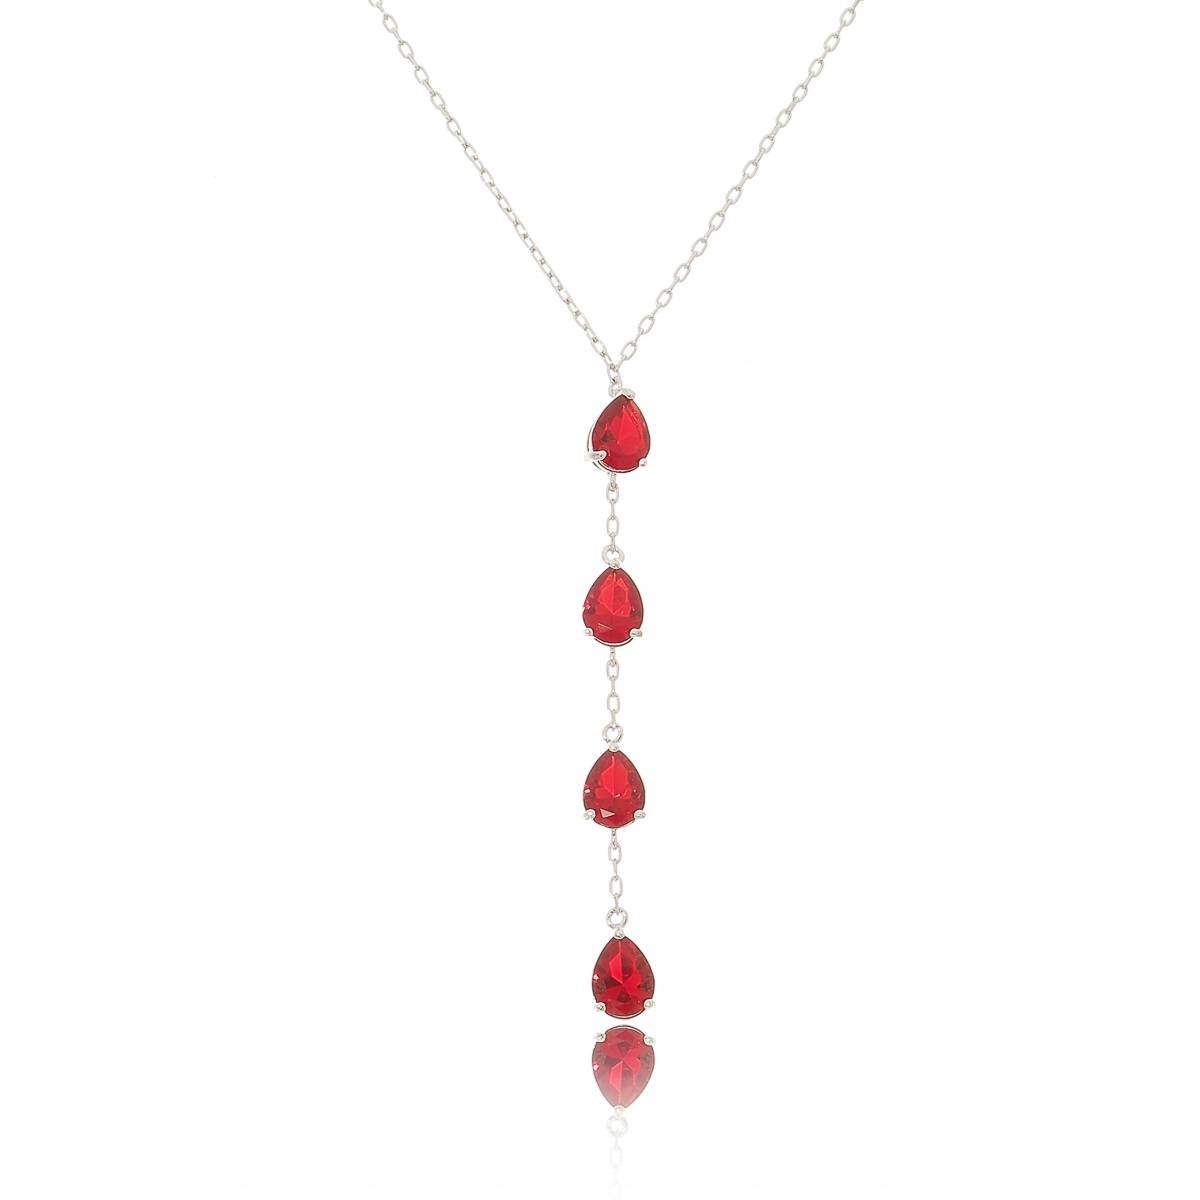 Presente de Dia das Mães: colar gravatinha sofisticado de gotas rubi